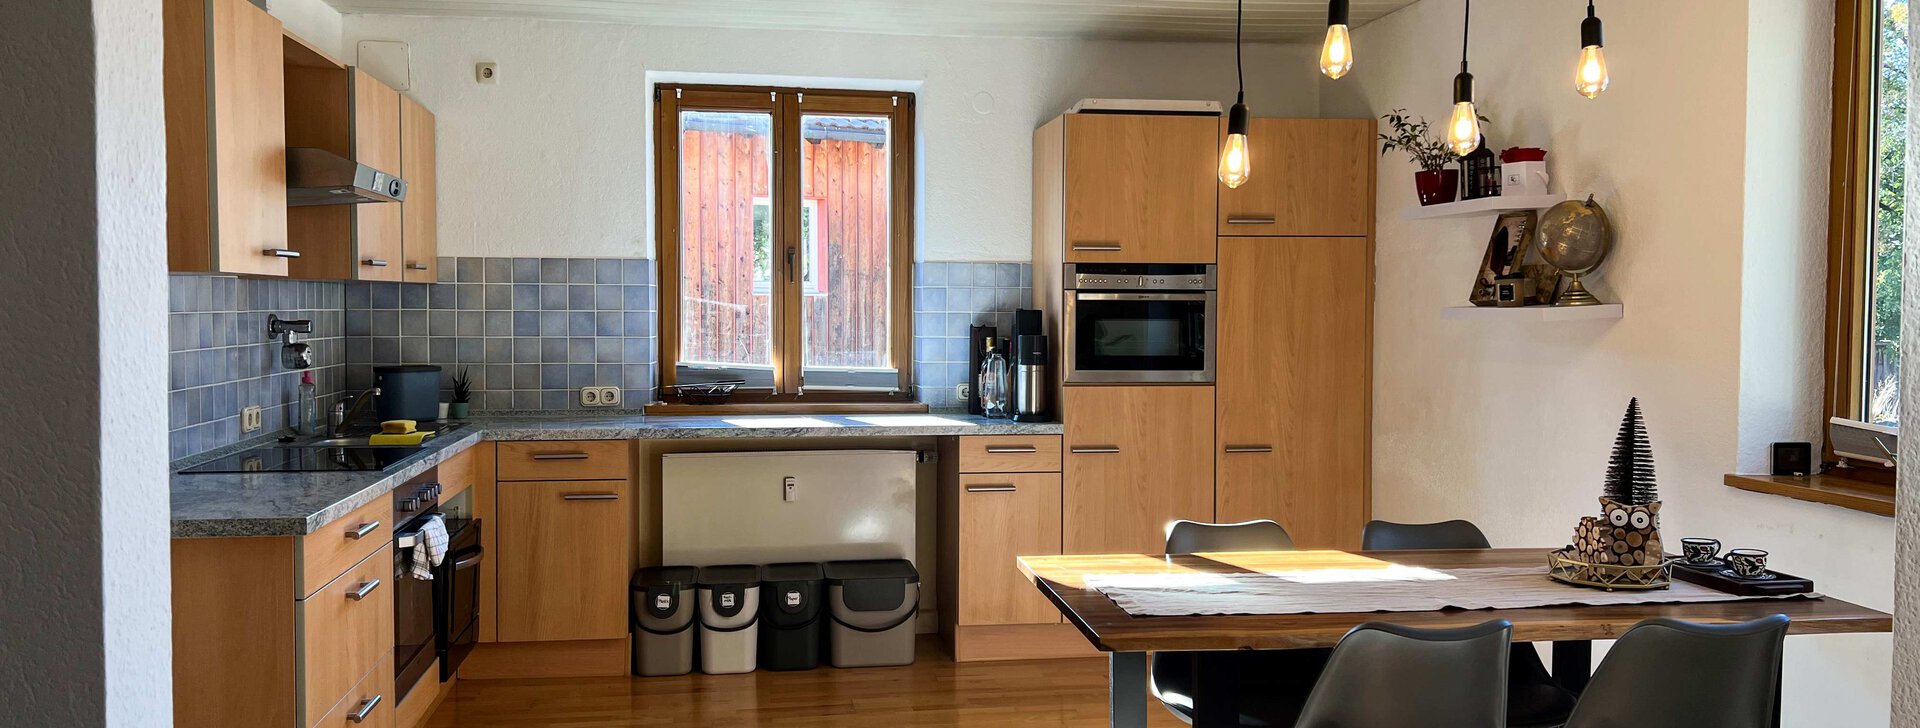 Küche, 2-Zimmer-Wohnung in Traunstein, Immobilie kaufen, Traunstein | © HausBauHaus GmbH 